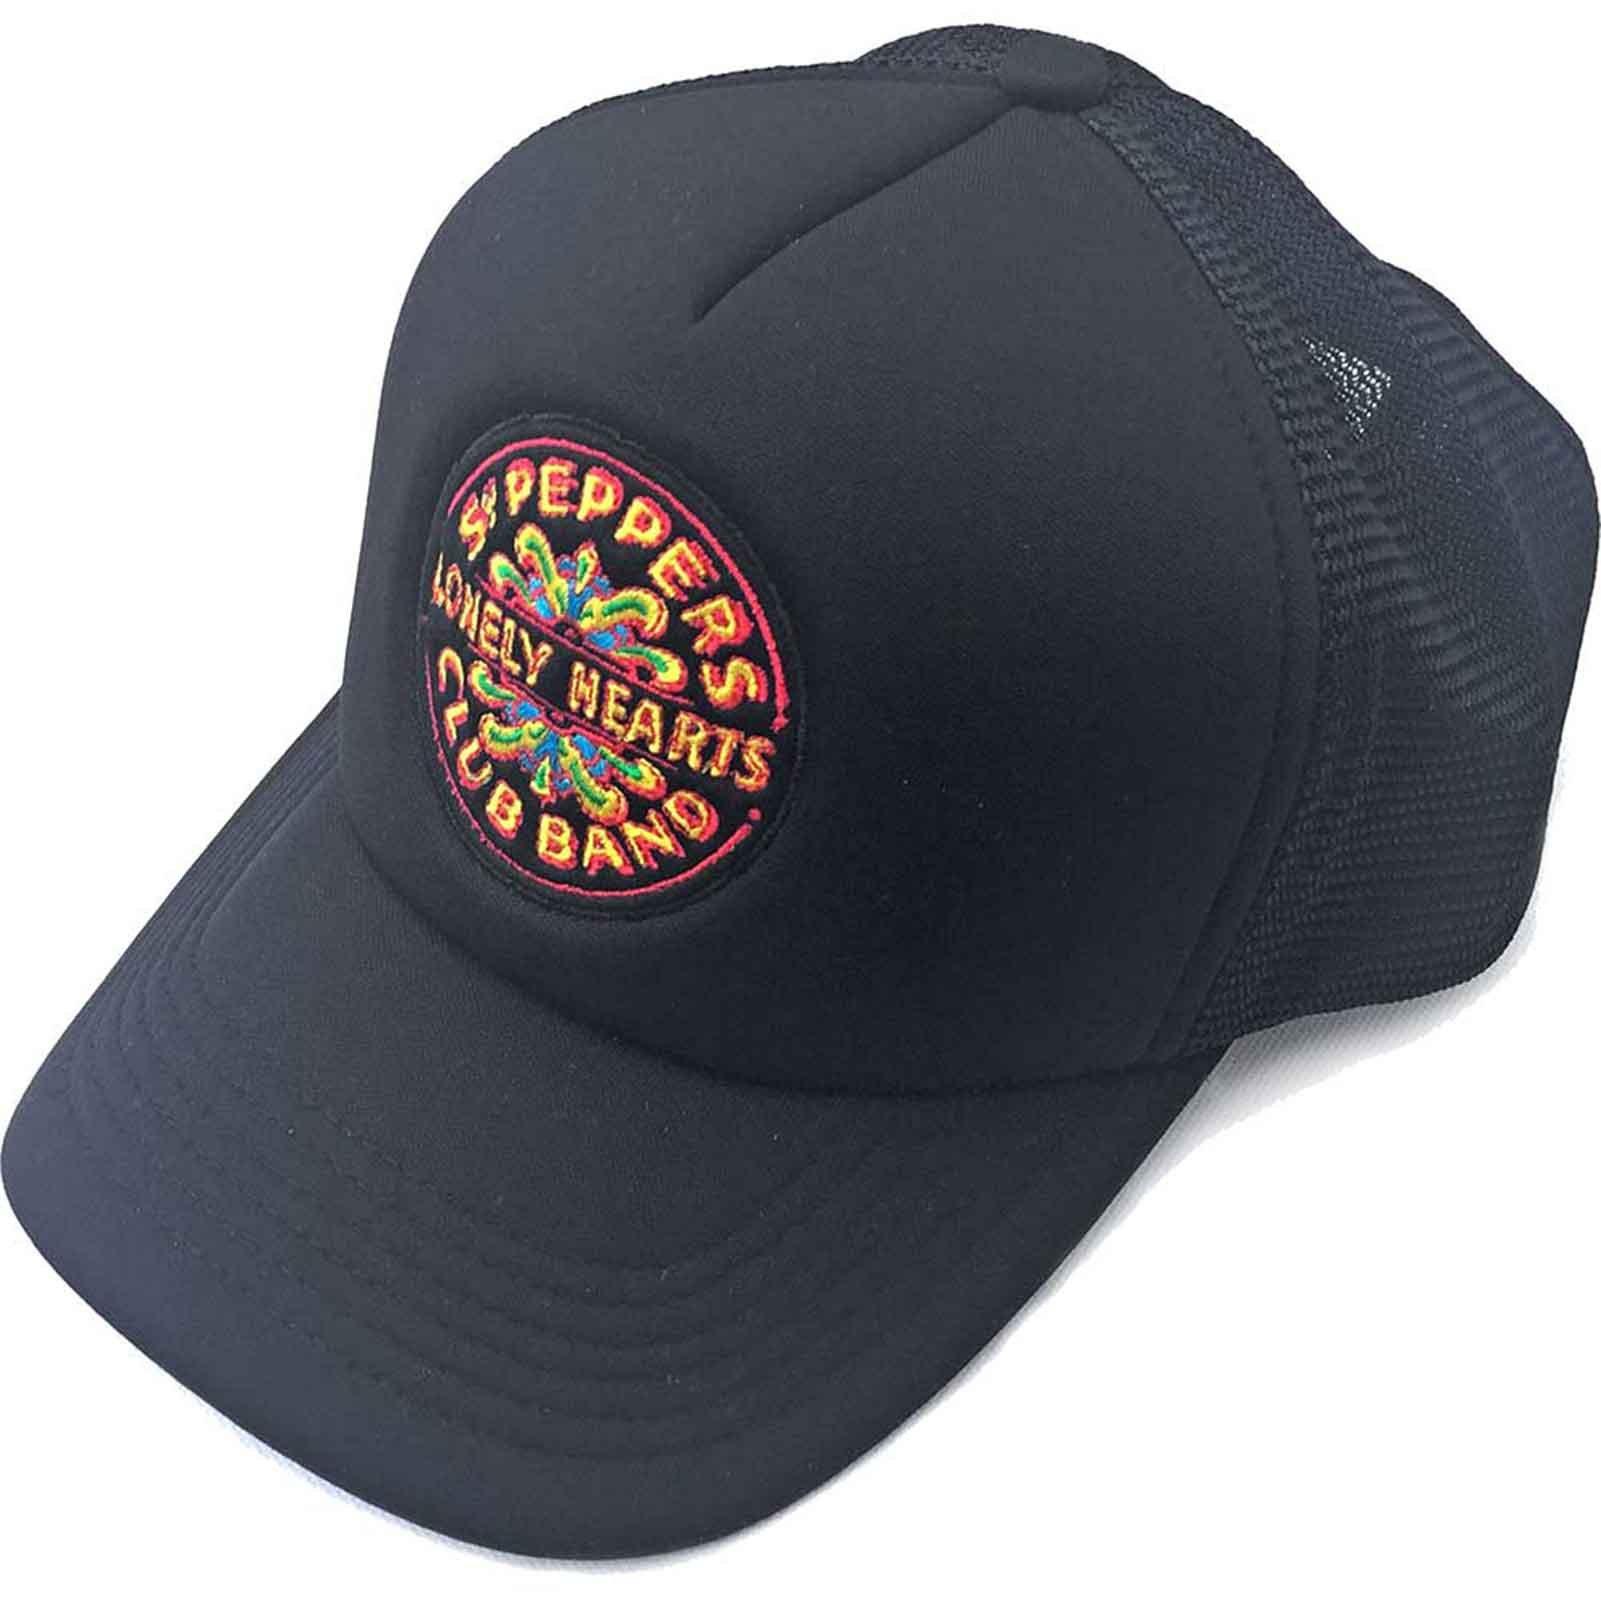 Бейсбольная кепка Trucker с логотипом Sgt Pepper Drum Beatles, черный бейсбольная кепка с ремешком на спине sgt pepper drum beatles красный